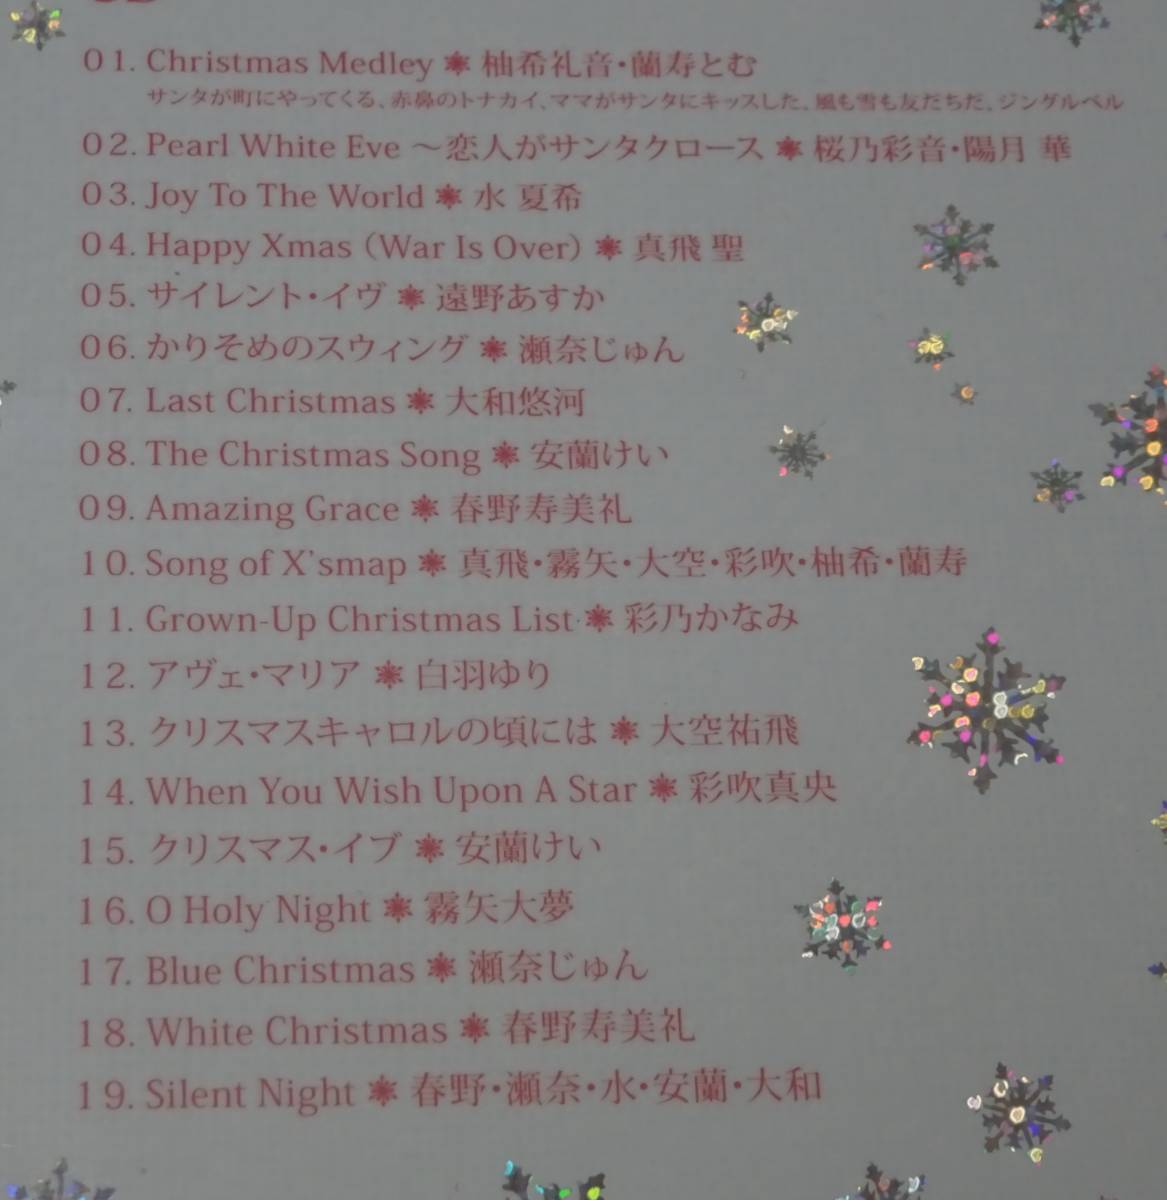 CHRISTMAS PRESENT Takarazuka ...CD*DVD... звук дешево орхидея .. белый перо ....... подлинный ..2007 год 